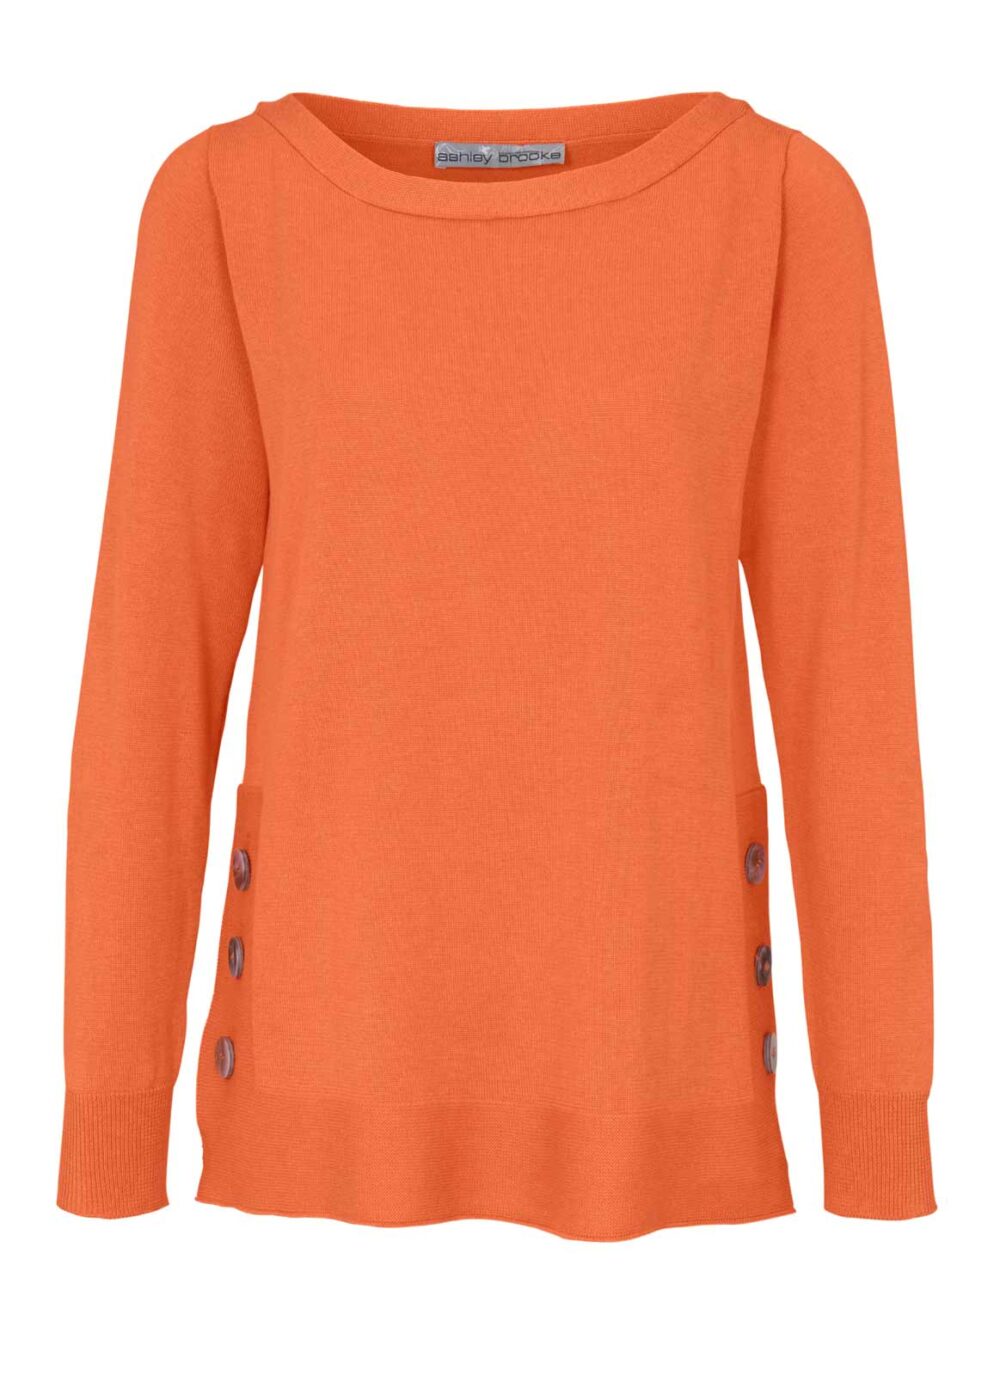 946.333 ASHLEY BROOKE Damen Designer-Pullover Orange Feinstrick m. Knöpfen